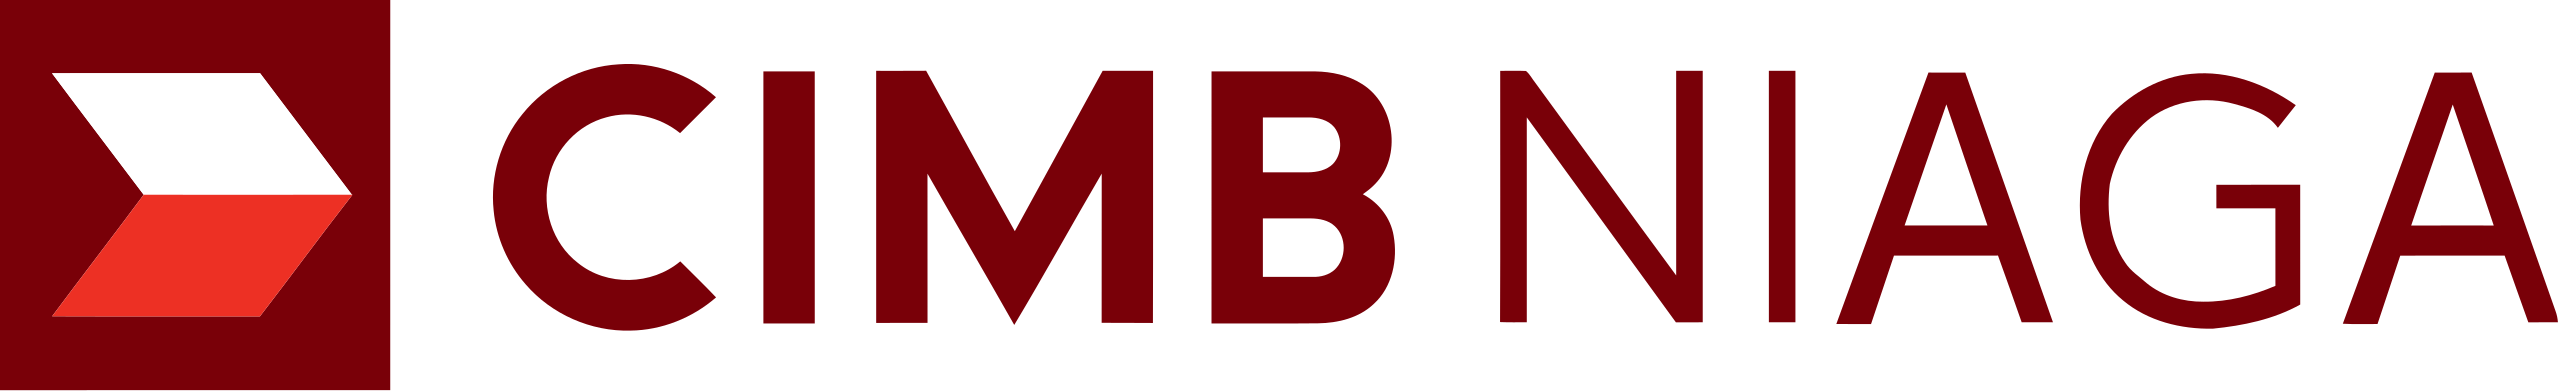 2560px-CIMB_Niaga_logo.svg